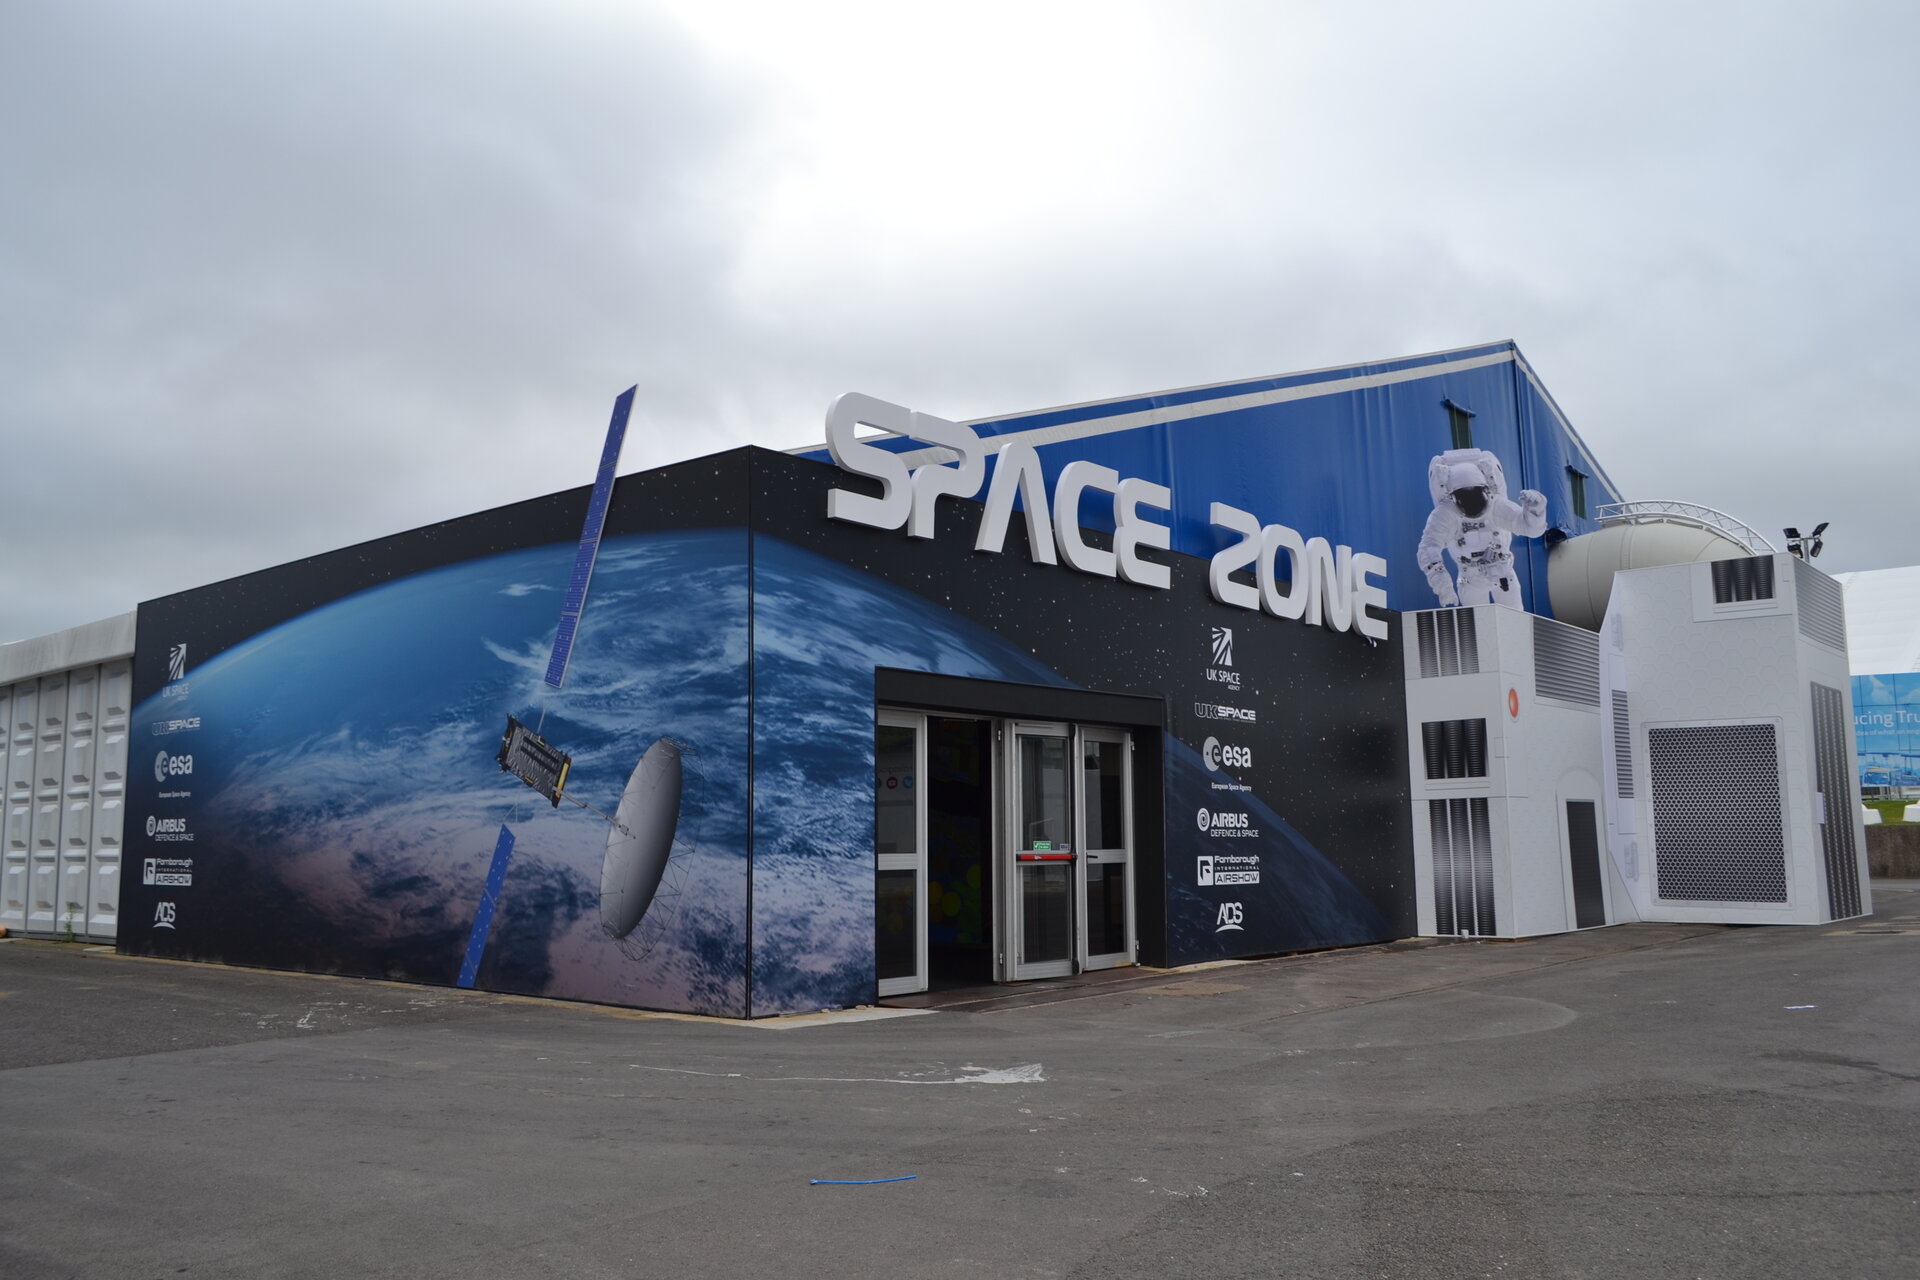 Space Zone, Farnborough 2016